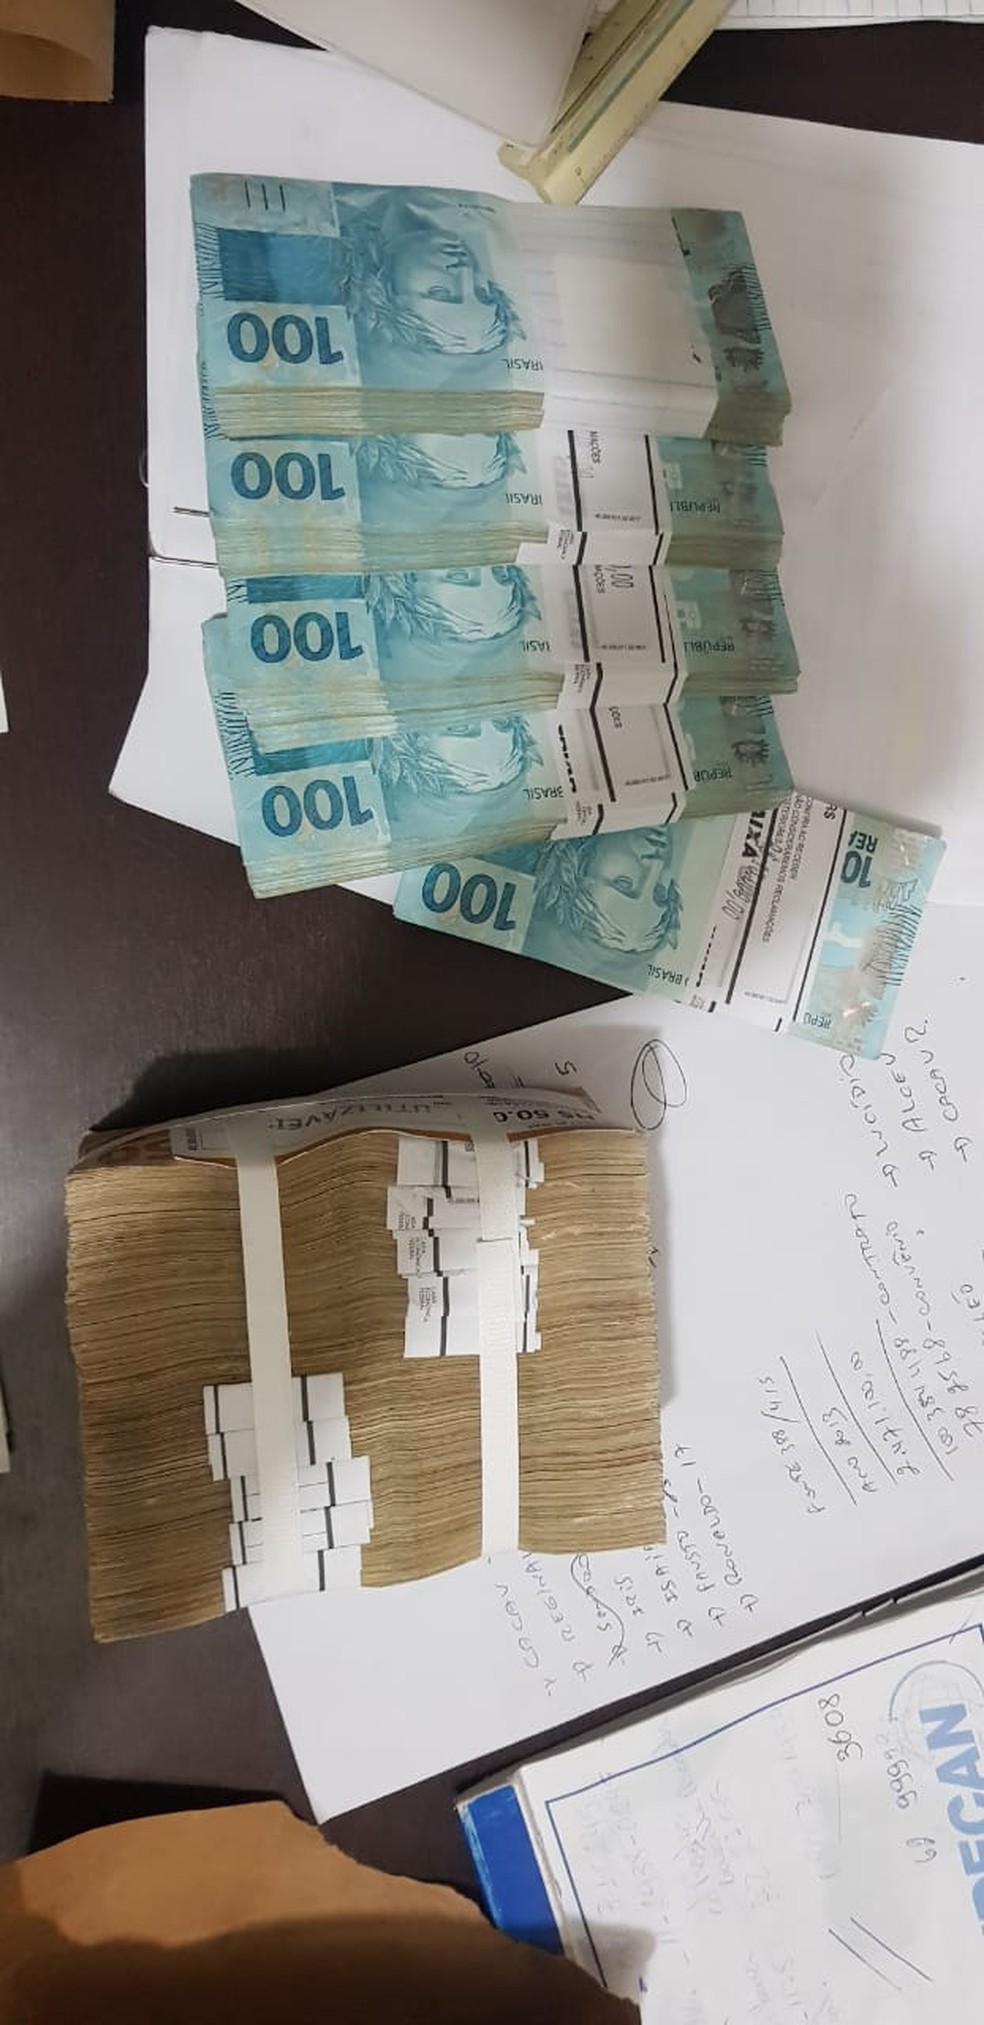 Dinheiro apreendido em casa durante operação que investiga prefeitos — Foto: PF/Divulgação